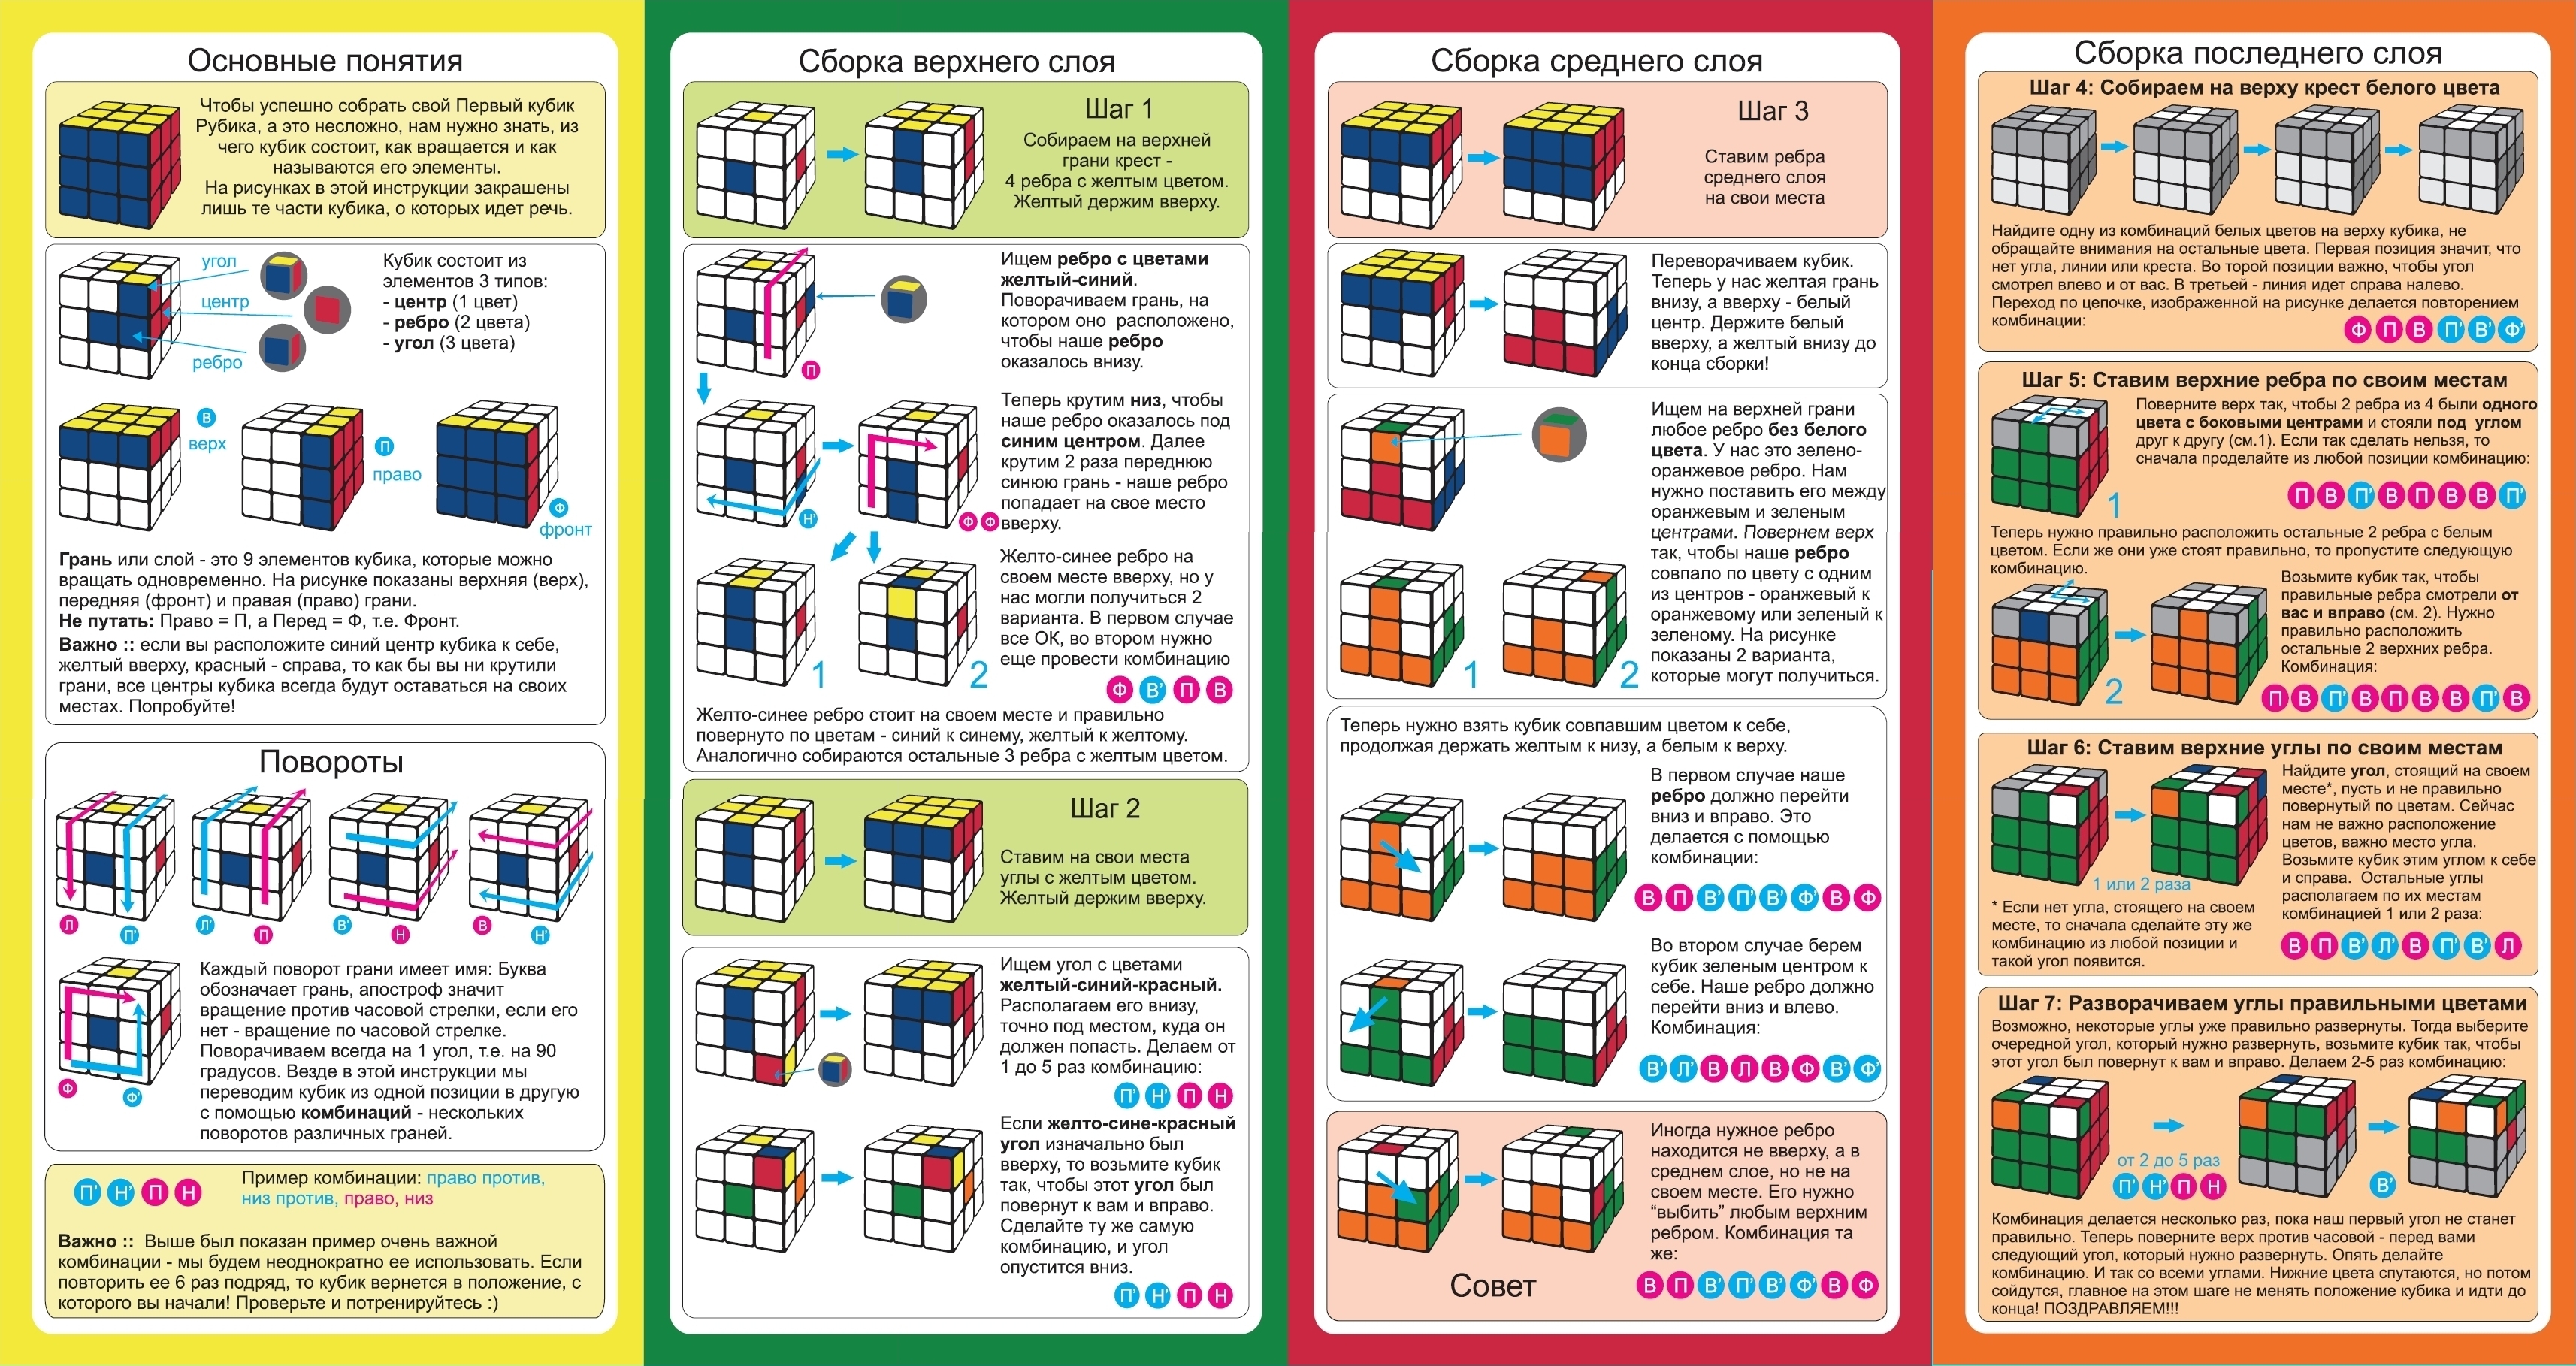 Пошаговая сборка кубика. Инструкция кубик Рубика 3х3 для начинающих схема. Алгоритм по сборке кубика Рубика 3х3 для начинающих. Сборка кубика Рубика 3х3 схема сборки для начинающих пошагово. Инструкция сборки кубика Рубика 3х3.